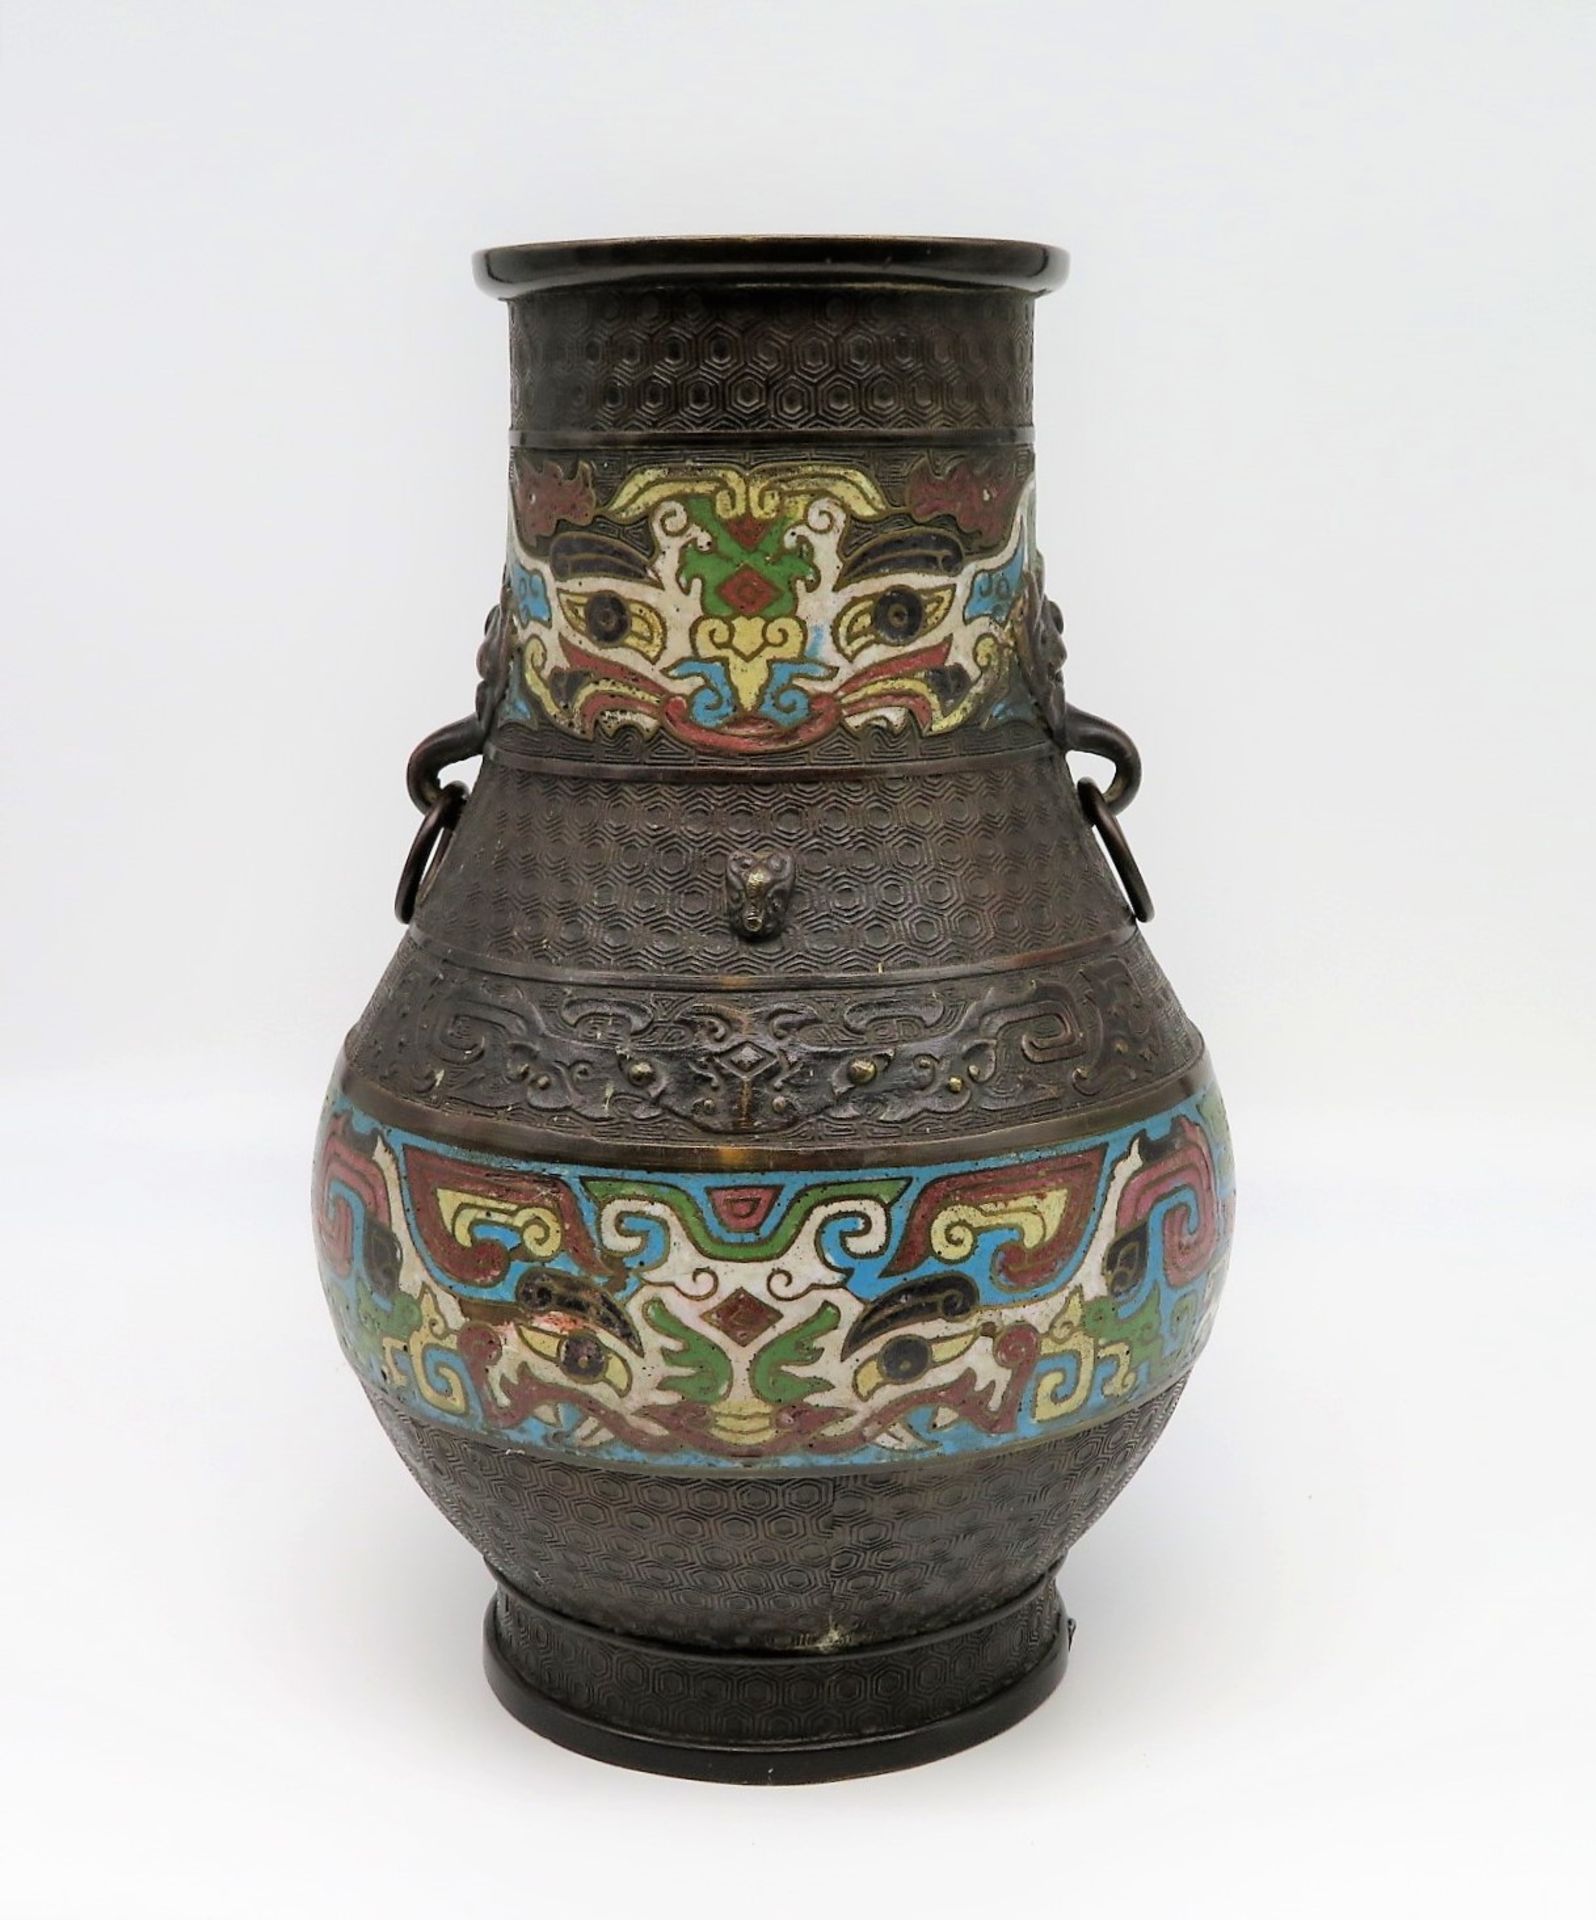 Cloisonné-Henkelvase, China, 19. Jahrhundert, Bronze mit farbigem Zellenschmelz, Boden rest., h 31